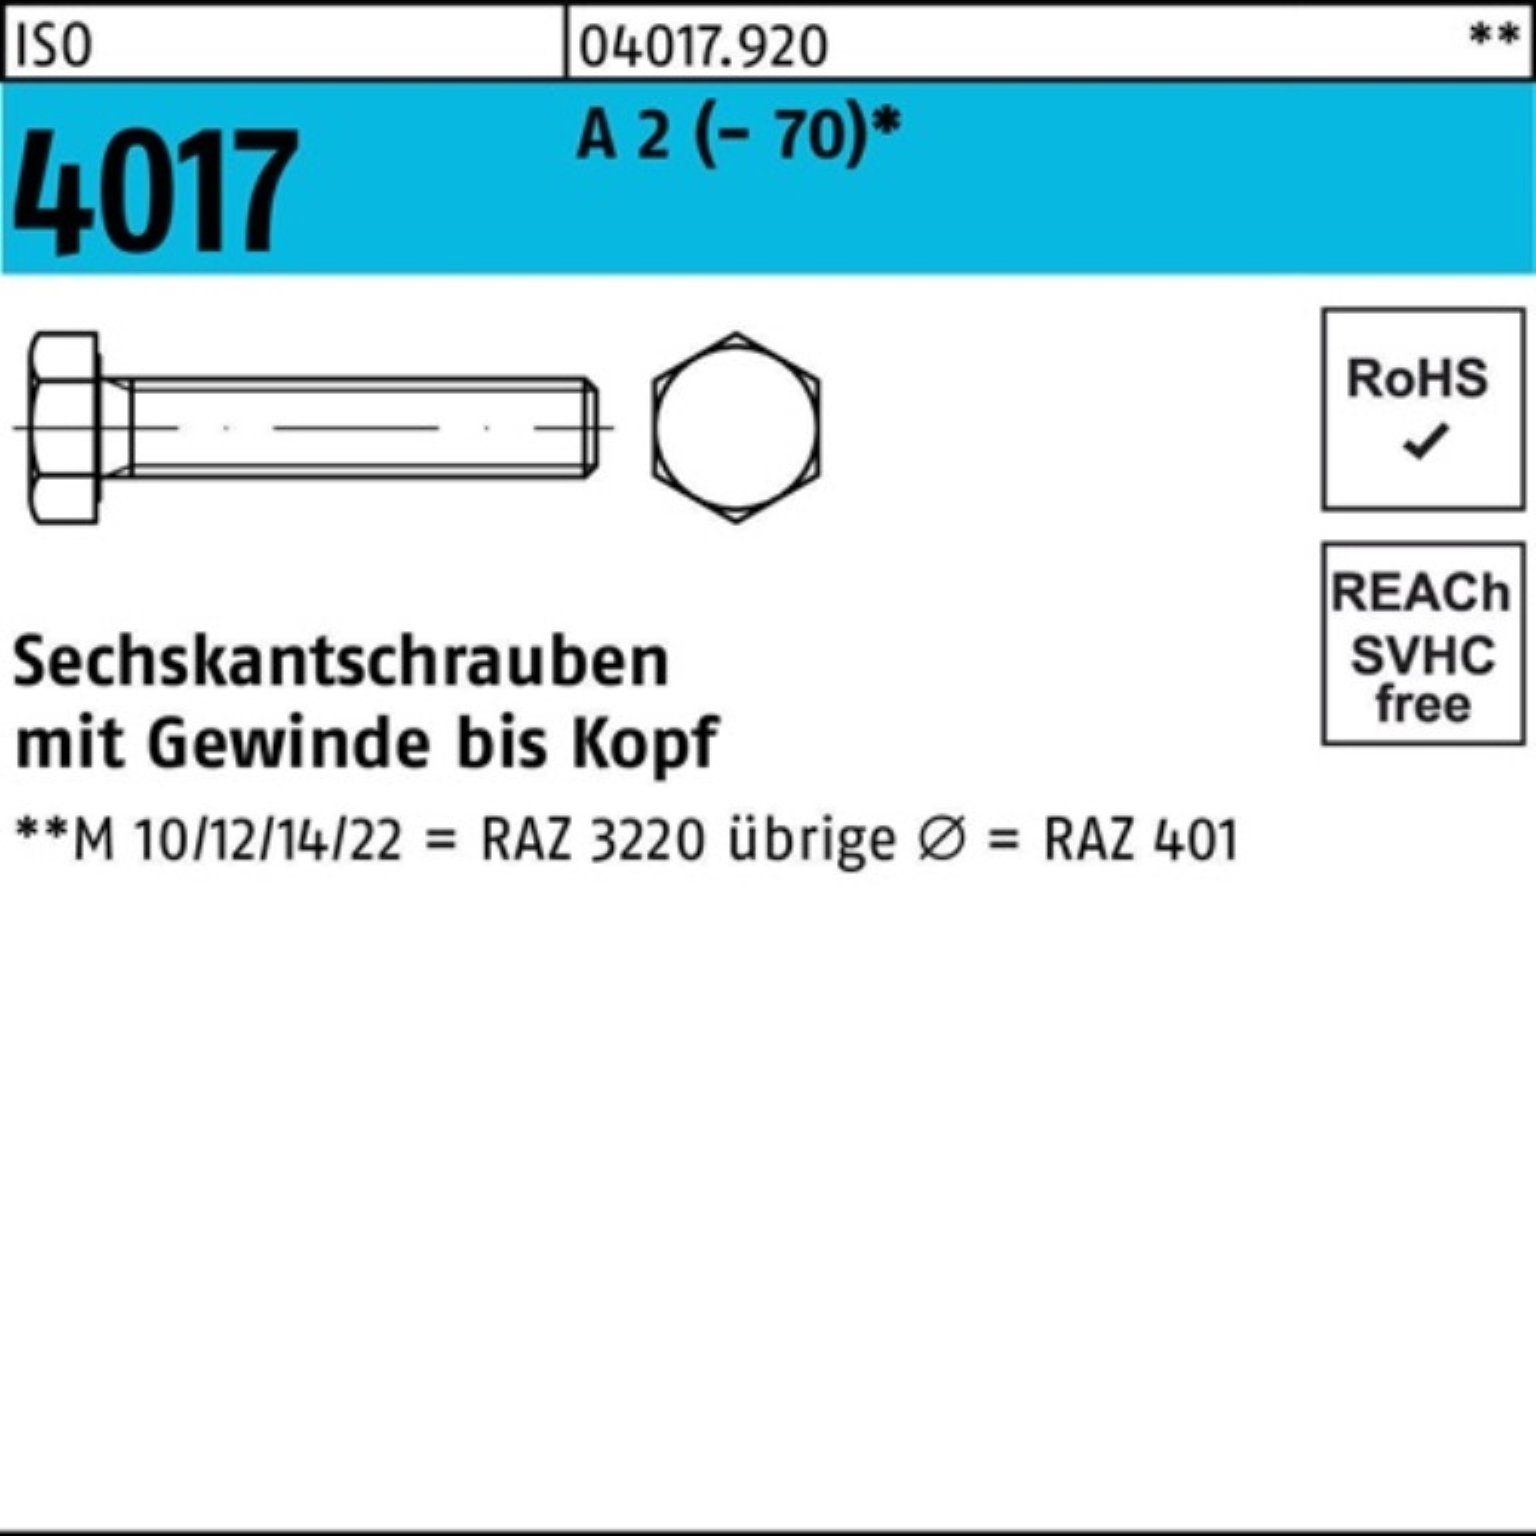 Bufab Sechskantschraube 100er Pack Sechskantschraube ISO 4017 VG M5x 16 A 2 (70) 100 Stück